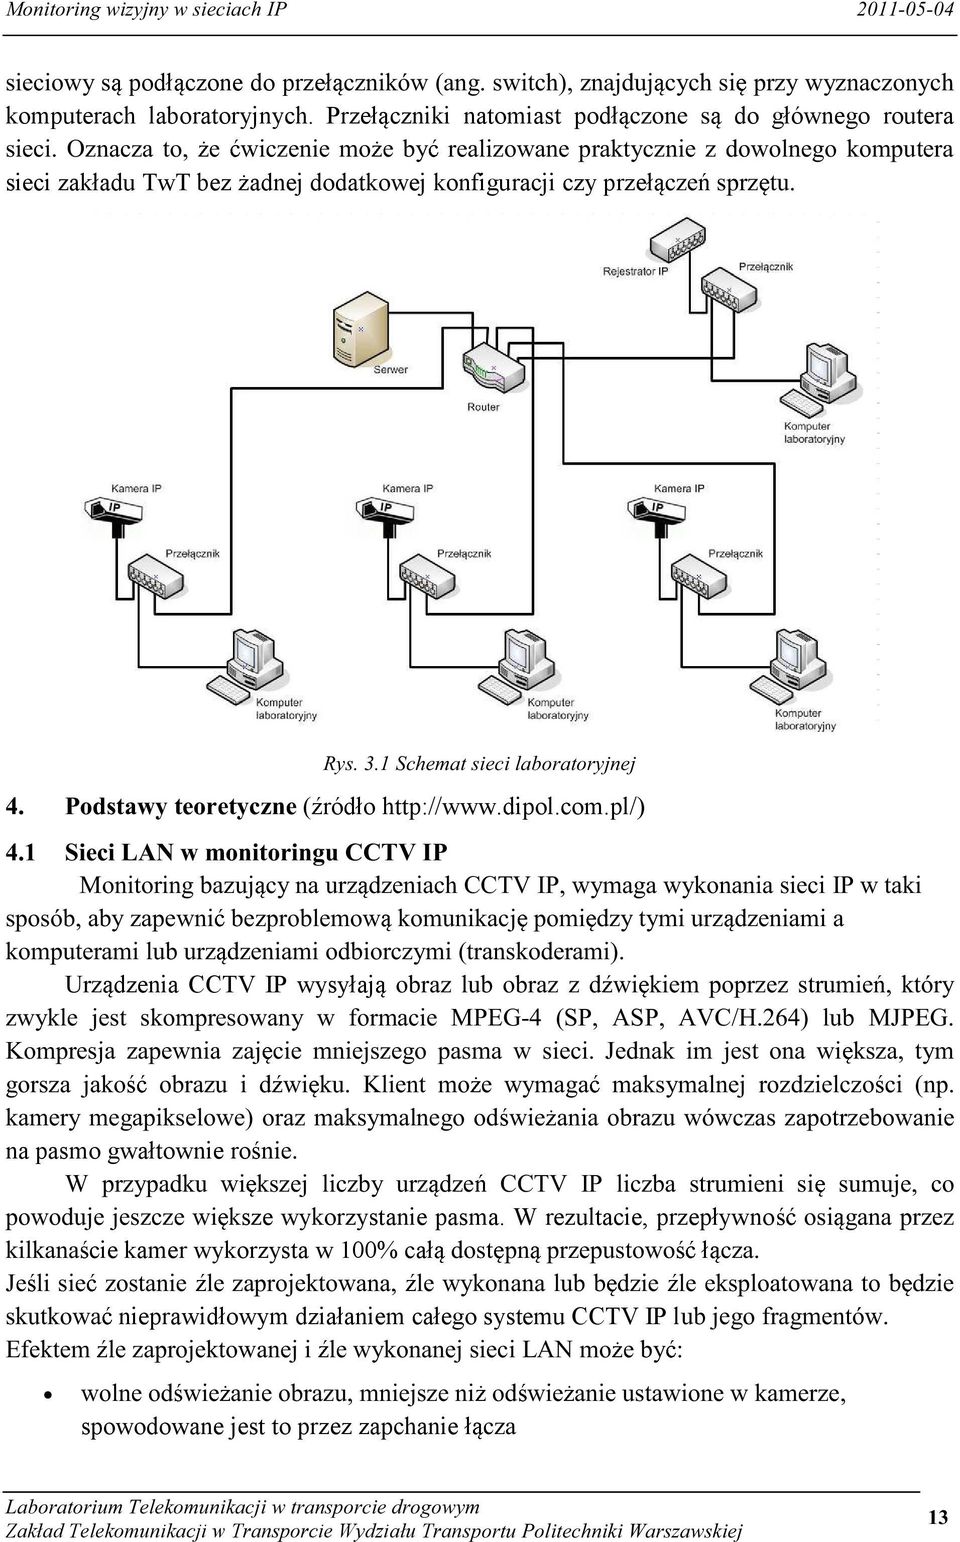 http://www.dipol.com.pl/) dzenia CCTV IP wysyłaj na pasmo gwałtownie ro ksze wykorzystanie pasma.